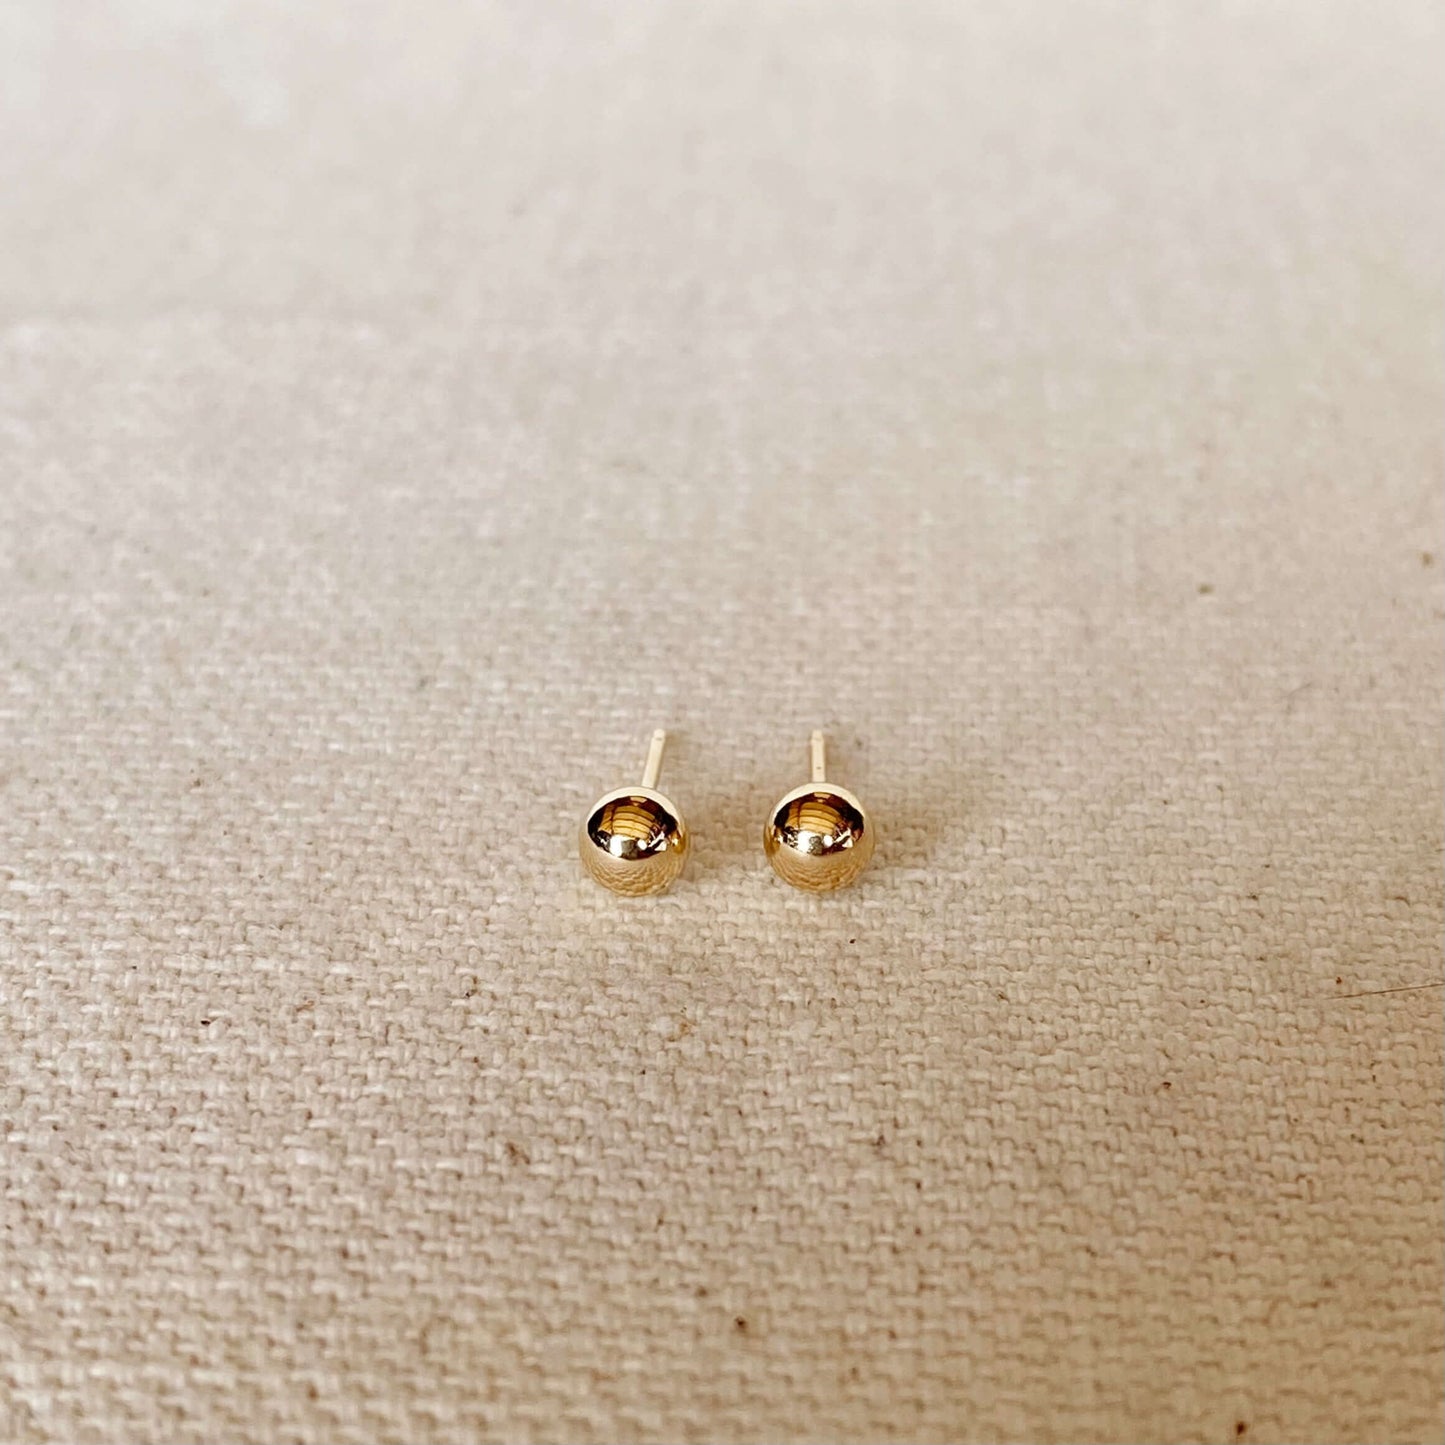 GoldFi 14k Solid Gold 4mm Ball Stud Piercing Earrings